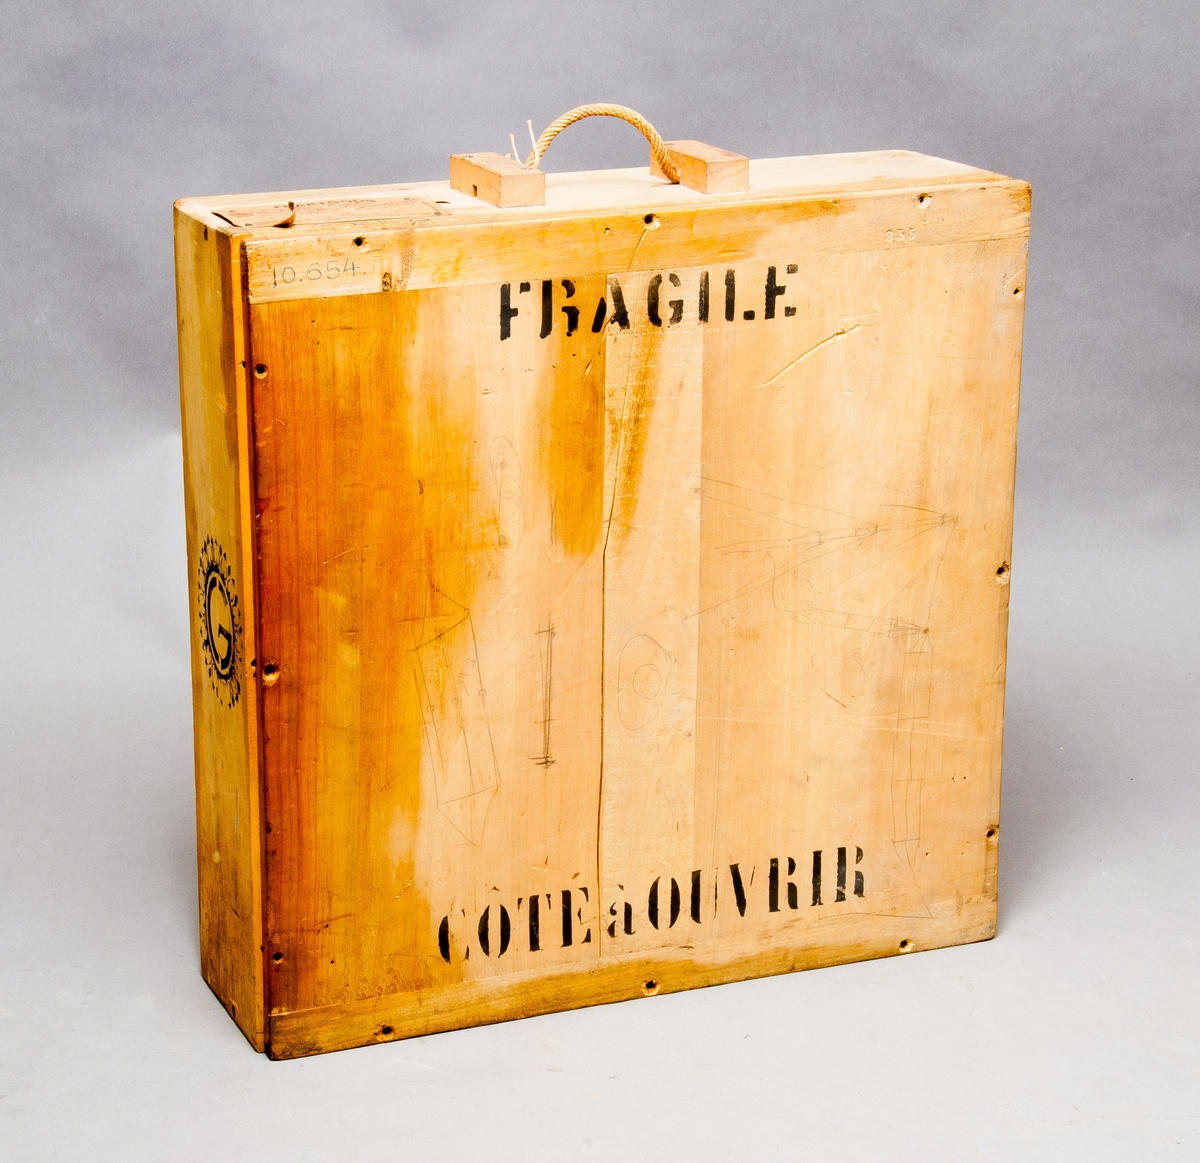 Högtalare med veckat membran, på fot av metall. I originalförpackning av trä, märkt "Fragile, Céte à Ouvrir", foten märkt: "Haut-Parleur L.Lumiere Bte S.G.D.G., Nr 2489 Ets Gaumont Paris"